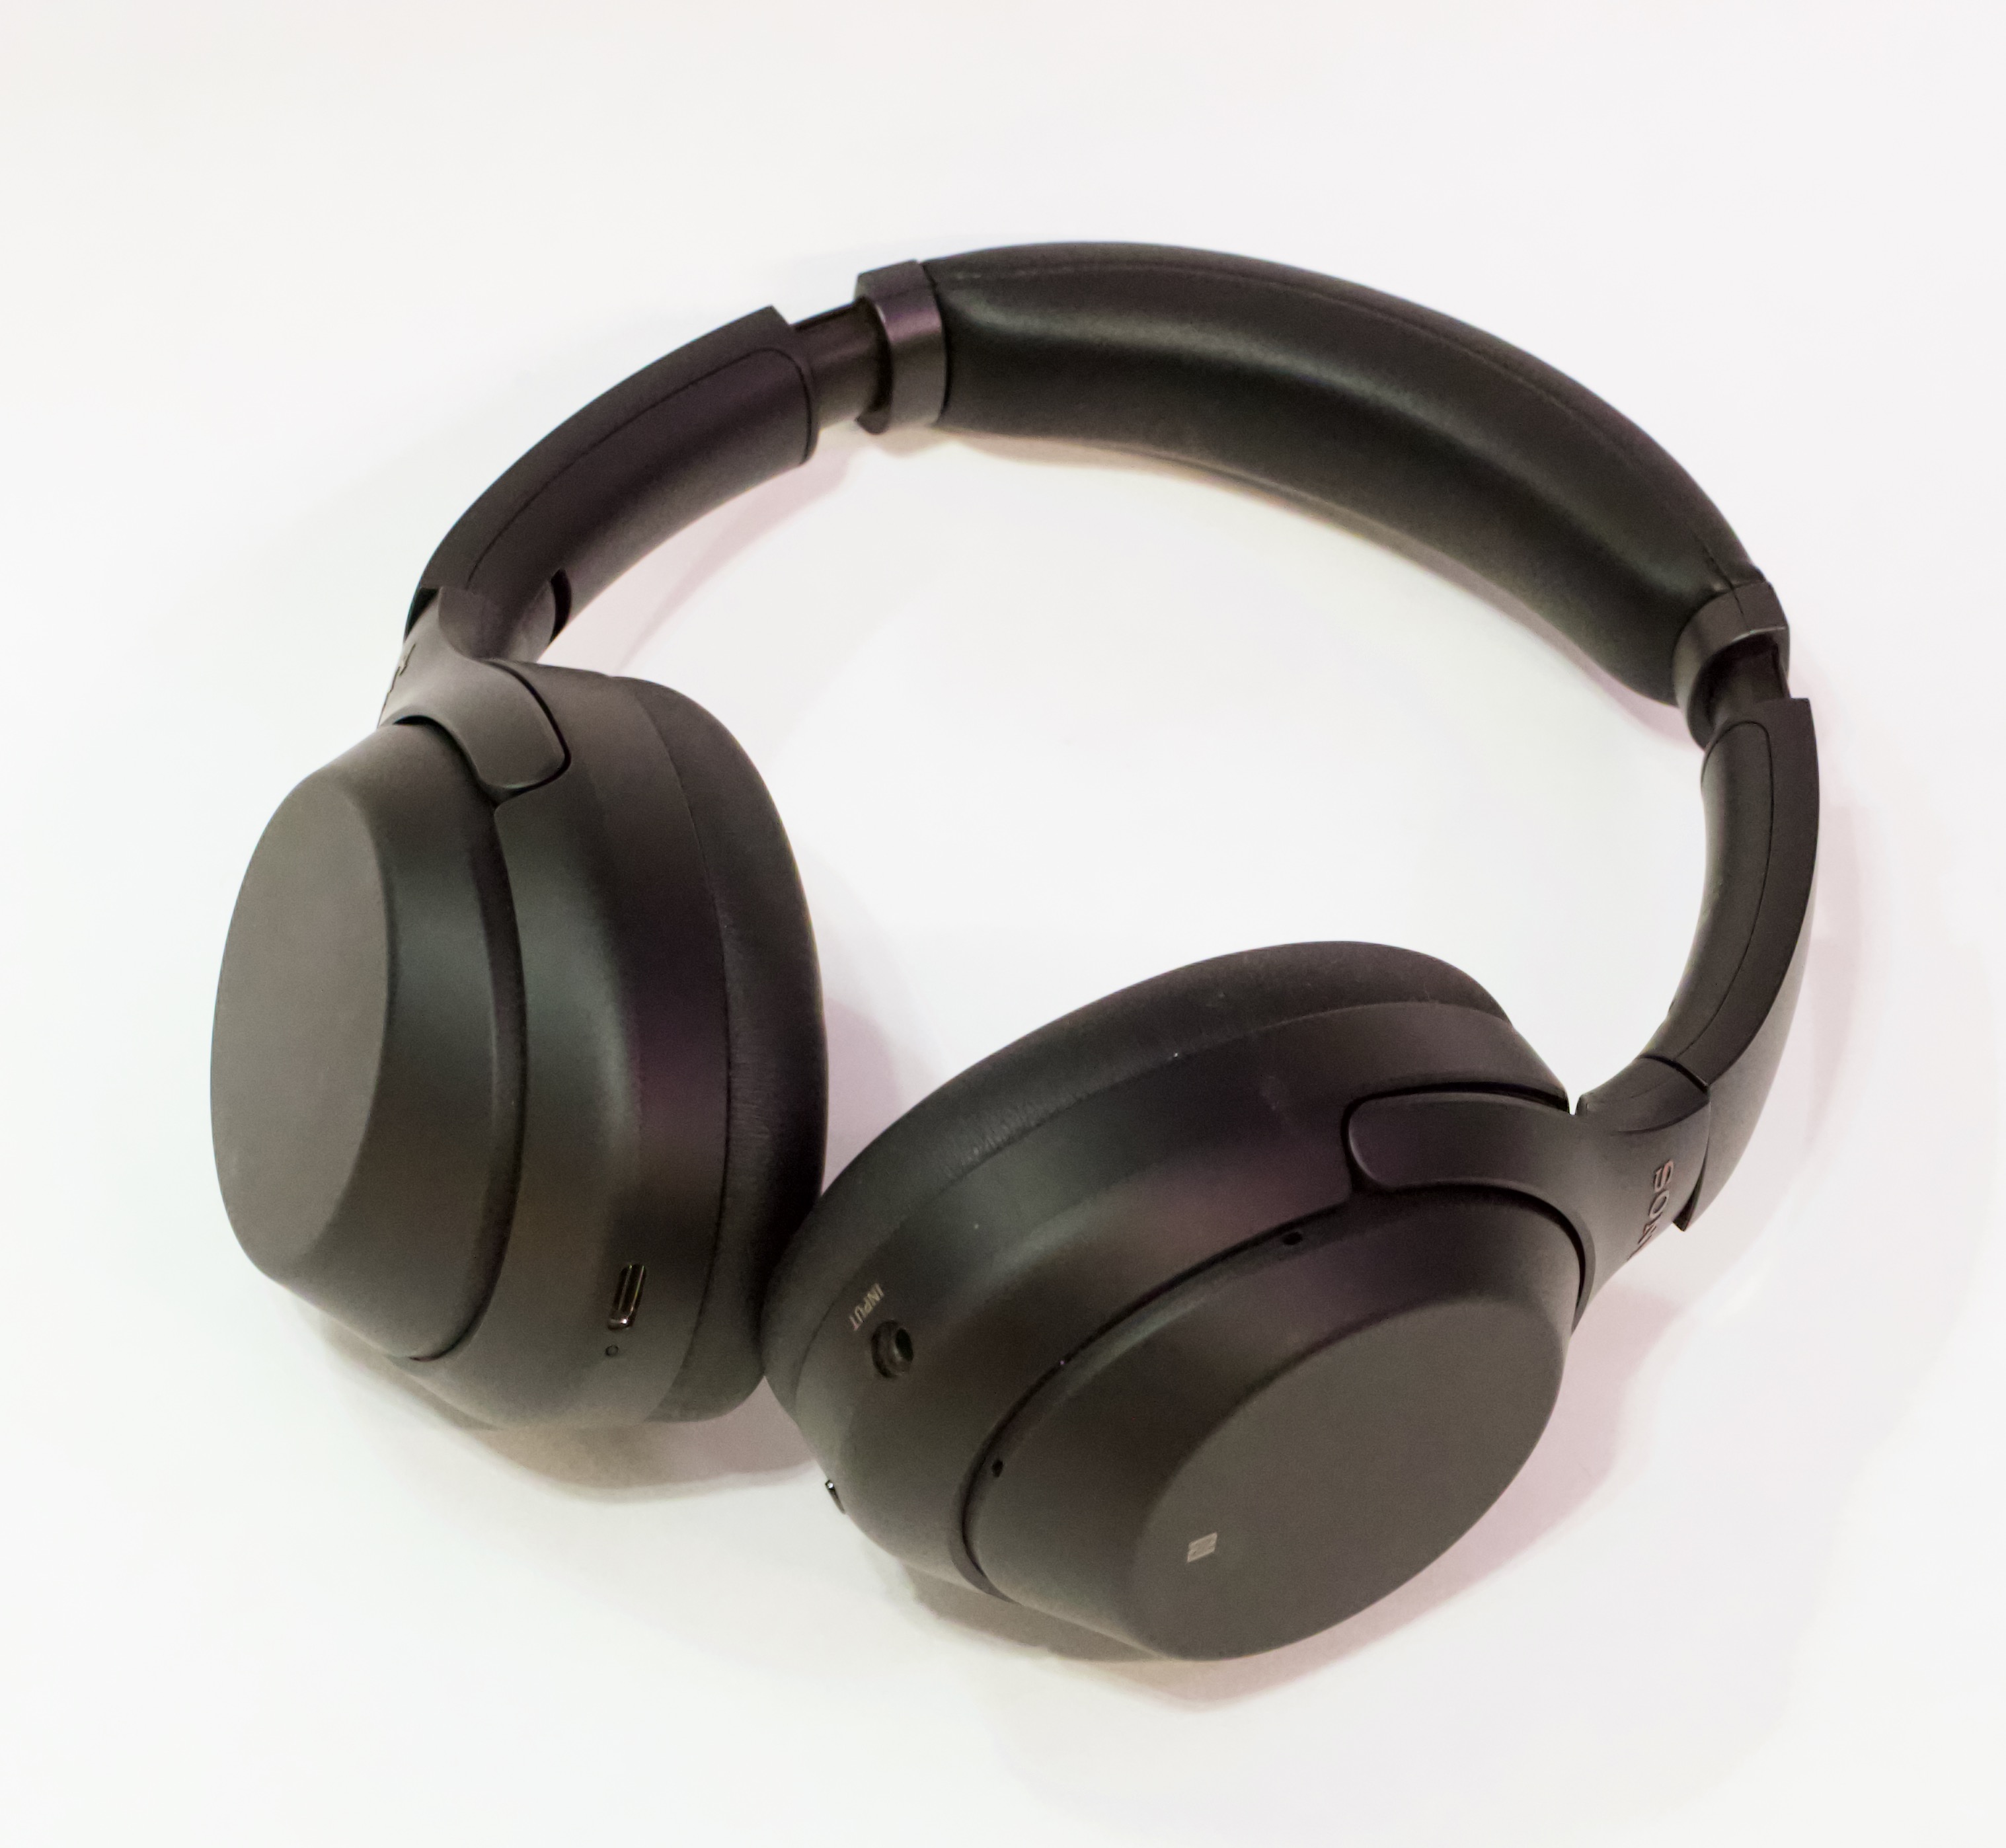 Sony WH-1000XM3 headphones